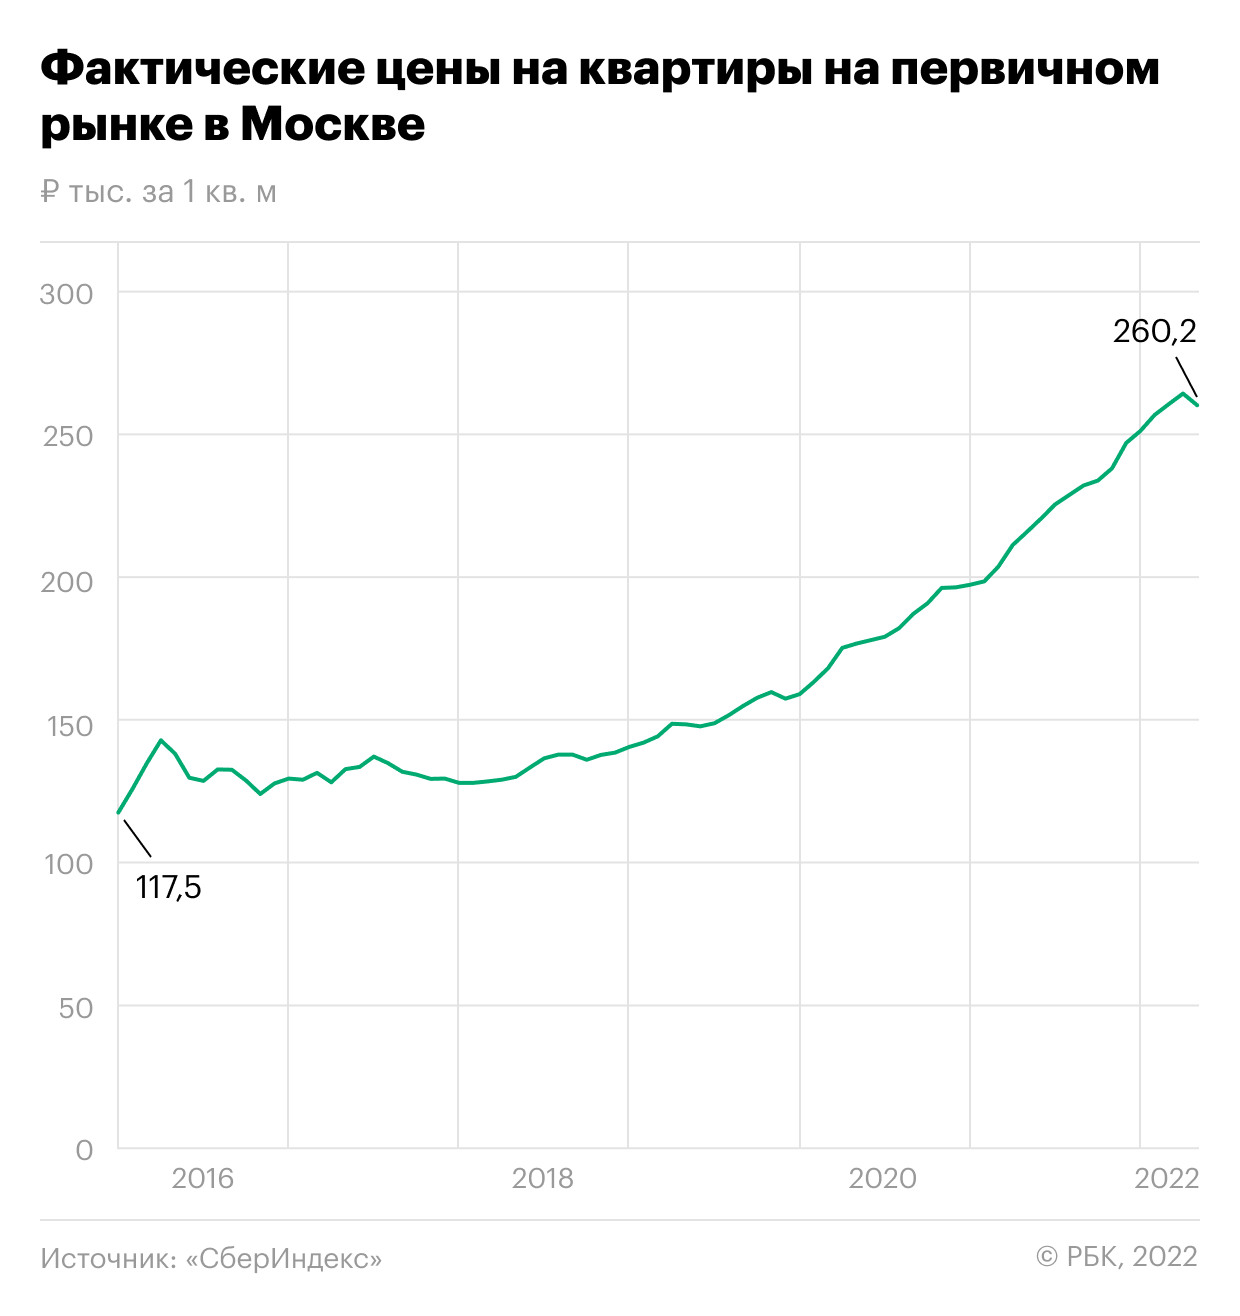 Как цены новостроек в Москве снизились впервые с 2019 года. Инфографика